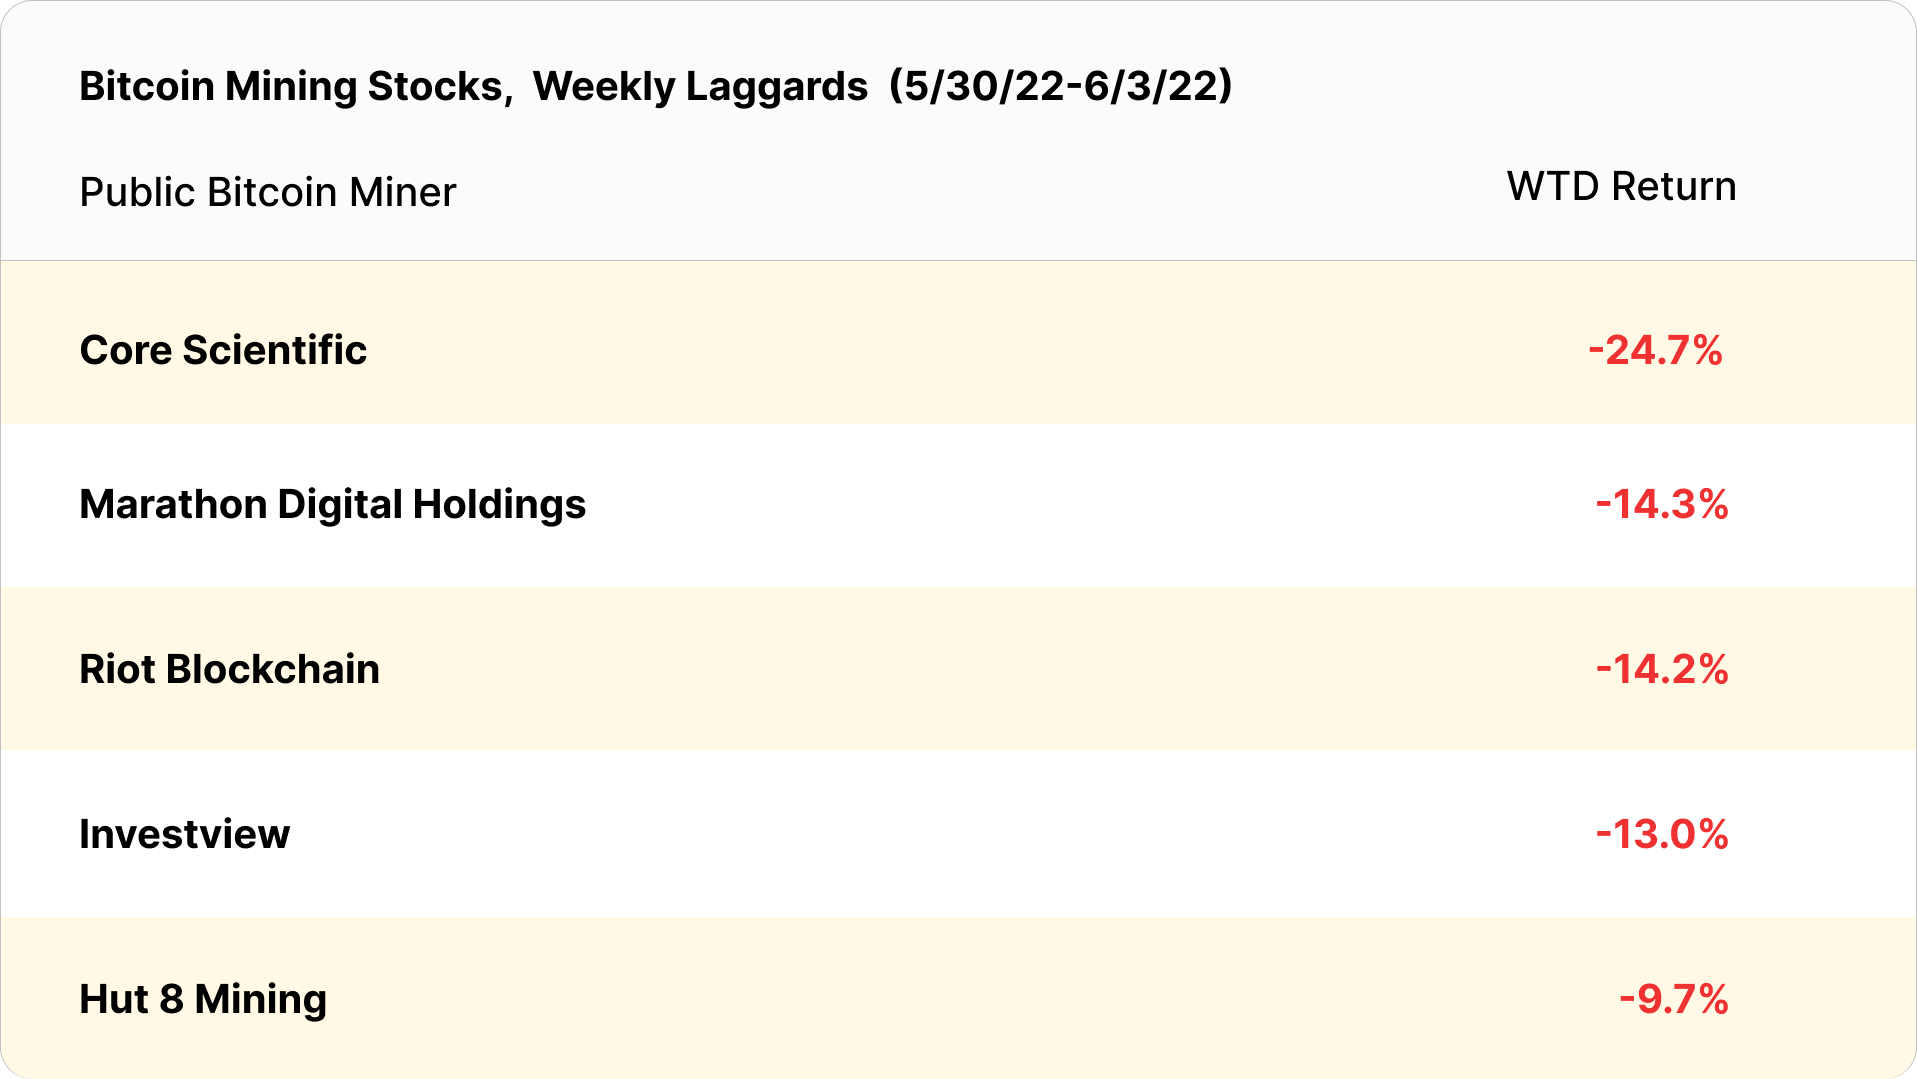 Bitcoin mining stocks, weekly laggards May 30 - June 3, 2022